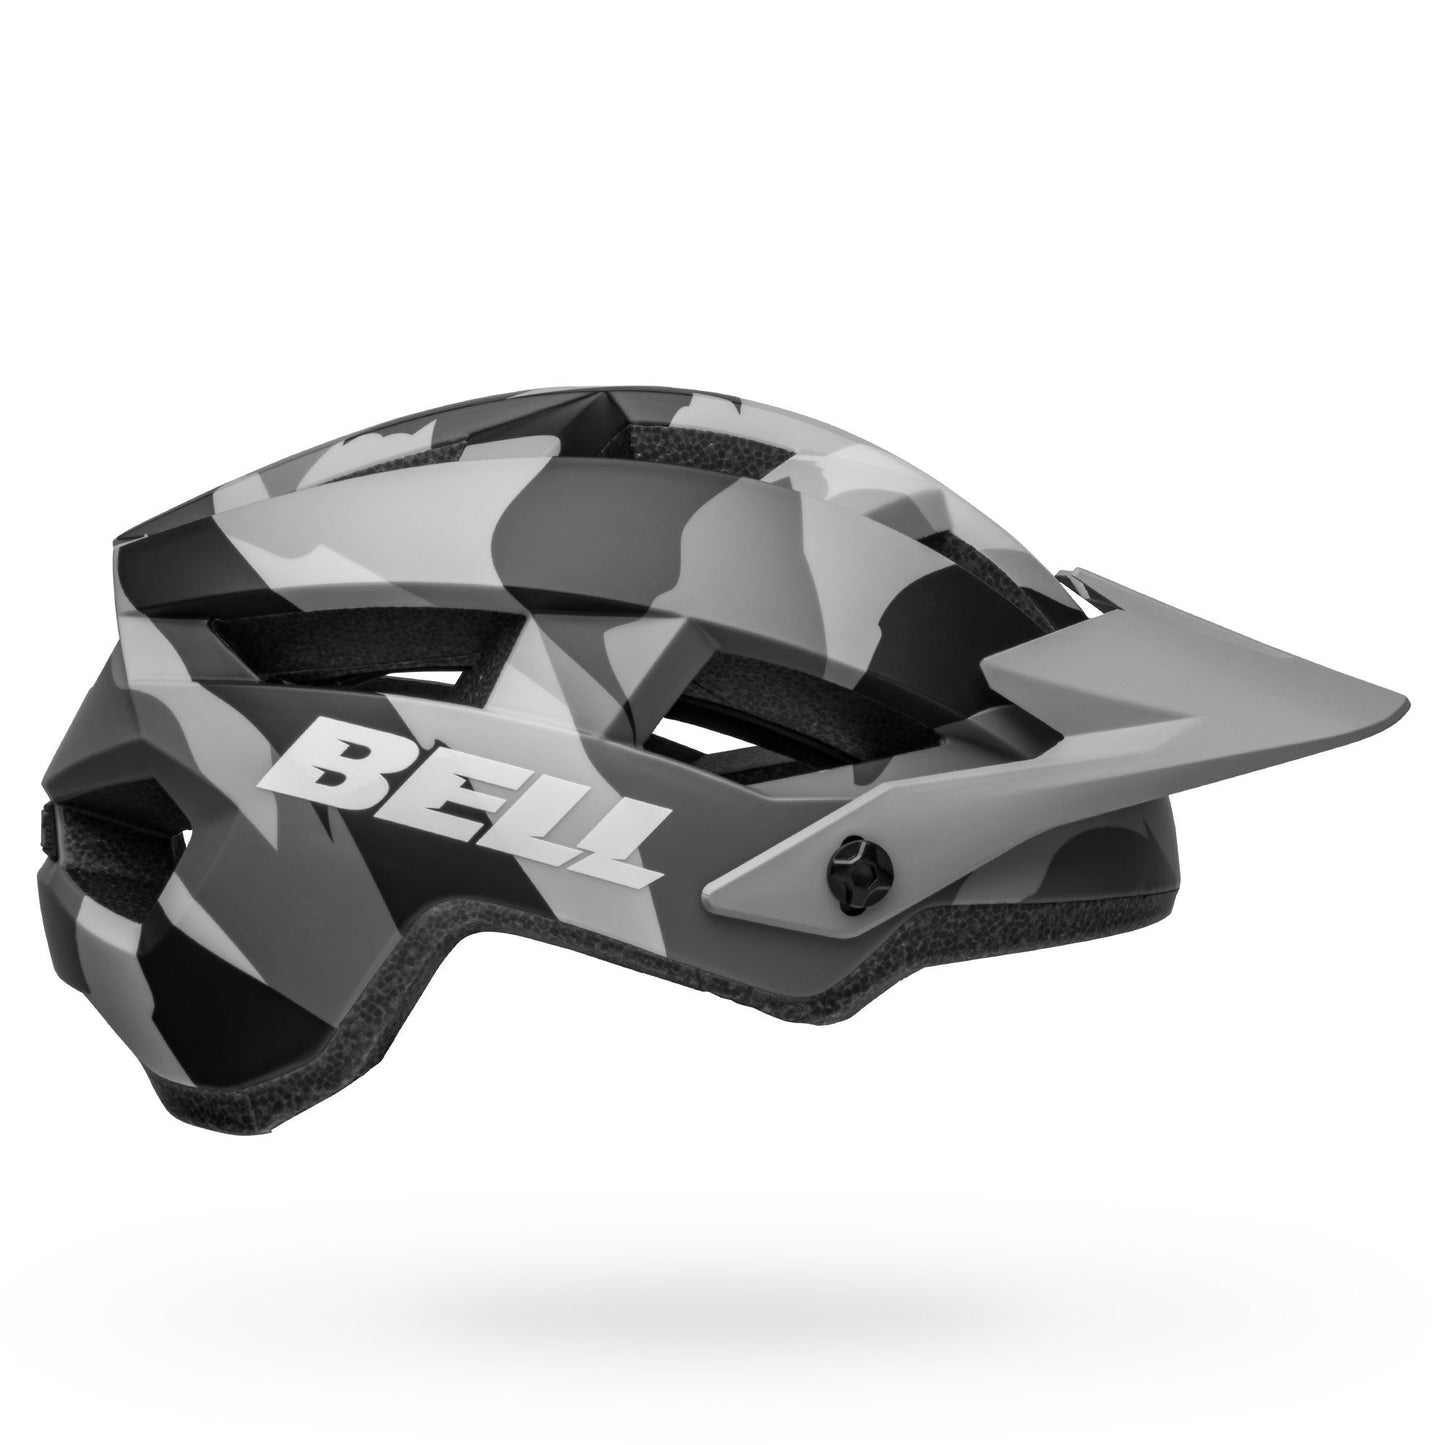 Bell Spark 2 MIPS Helmet Matte Grey Camo Bike Helmets